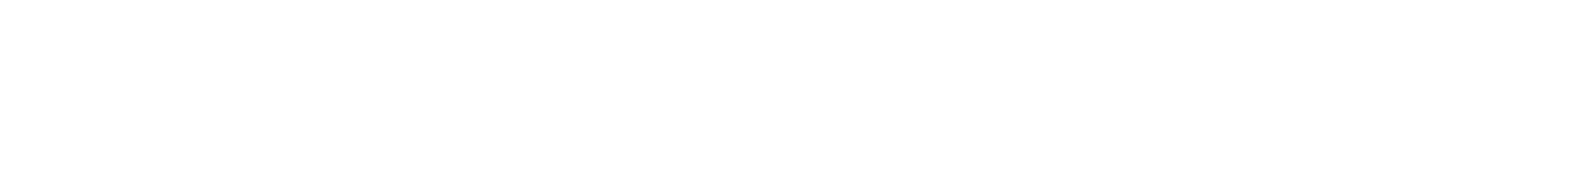 Gerresheimer logo large for dark backgrounds (transparent PNG)